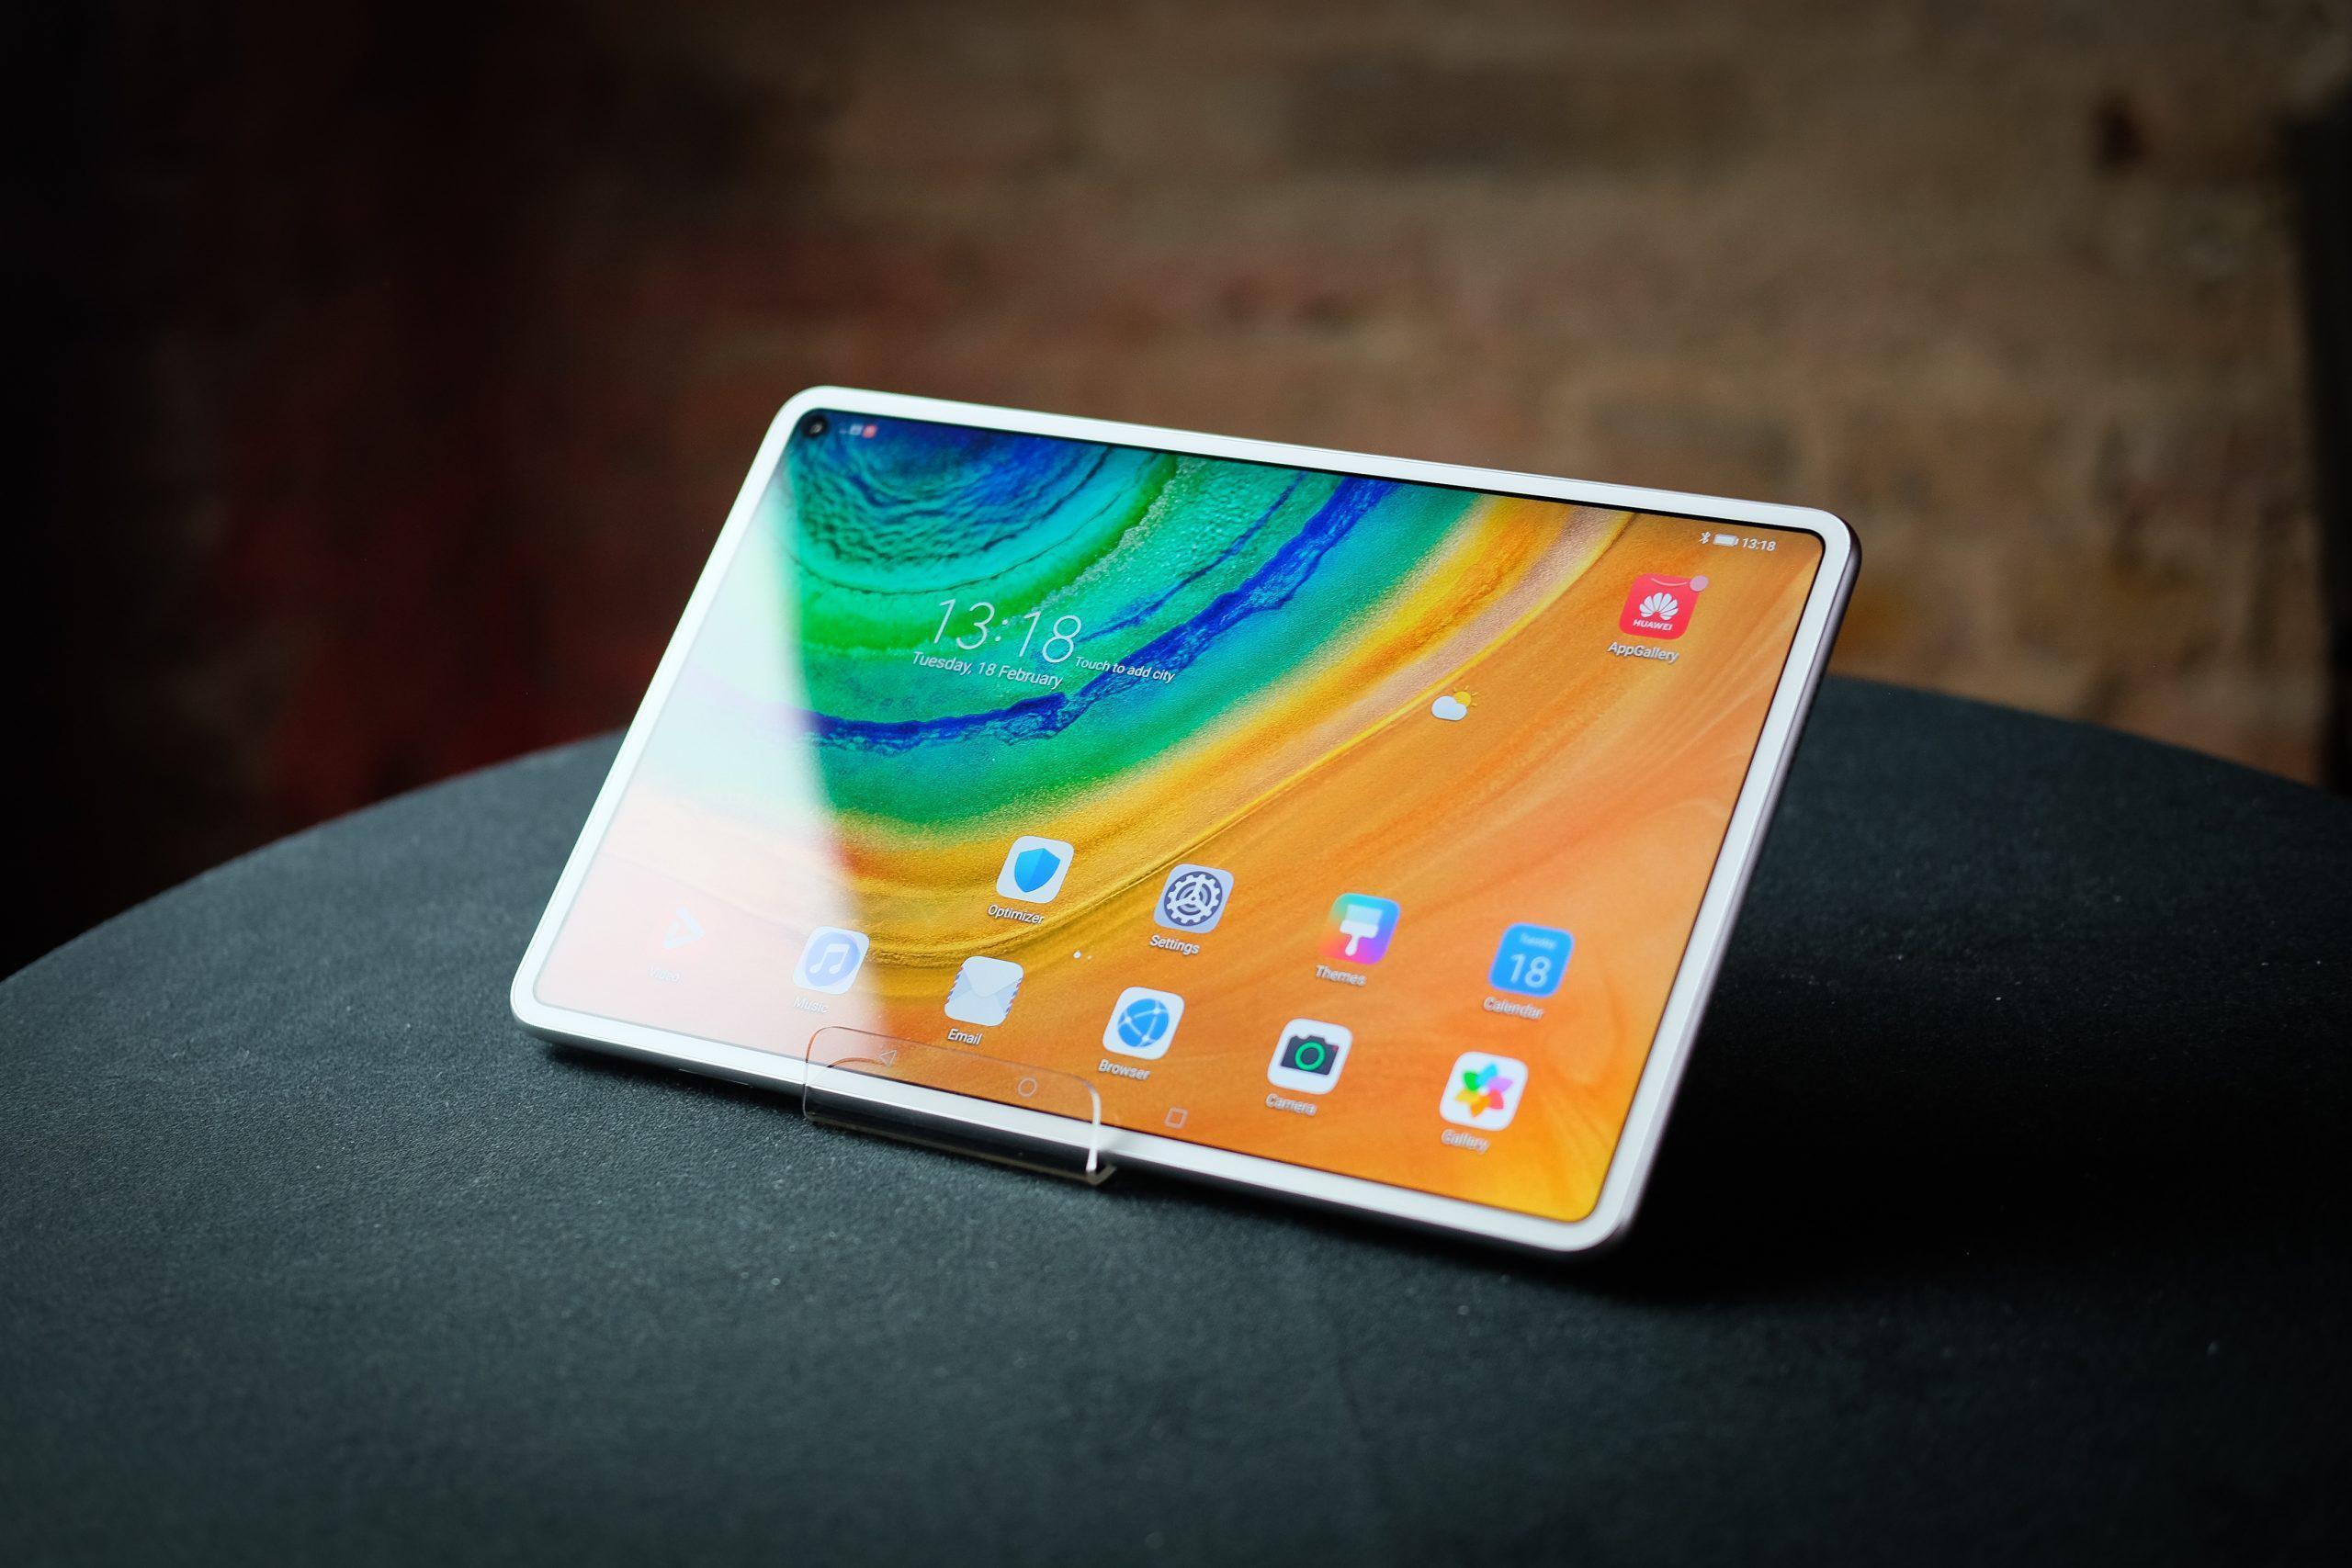 Huawei MatePad Pro inceleme - 2020’nin en iyi Android tableti mi